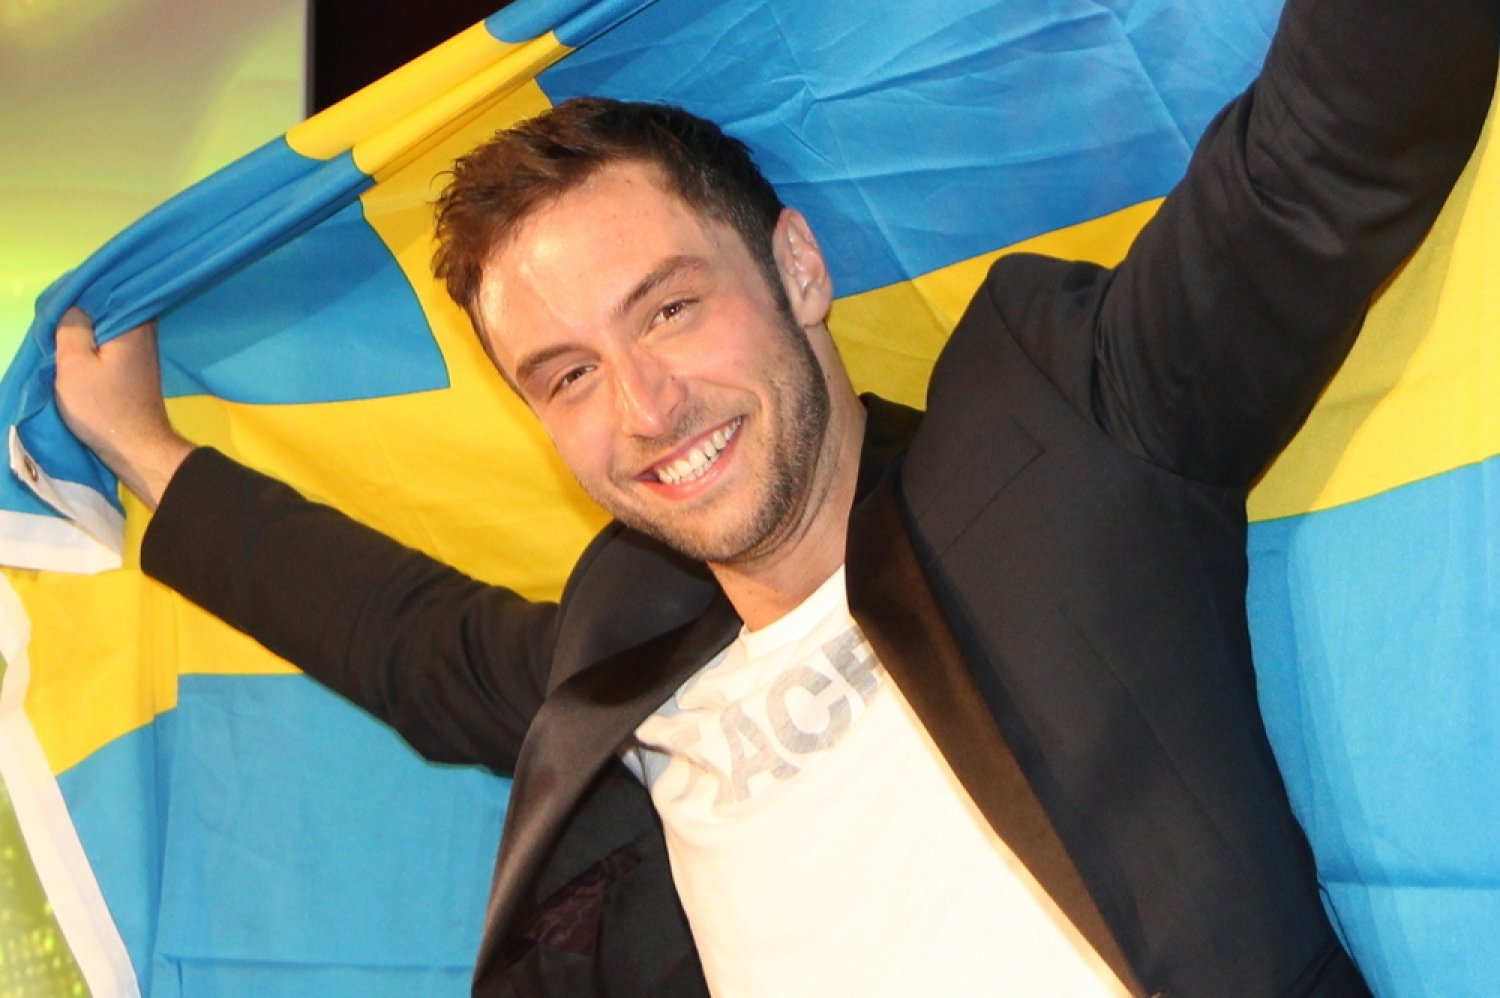 Måns Zelmerlöw (Suède) remporte l'Eurovision 2015